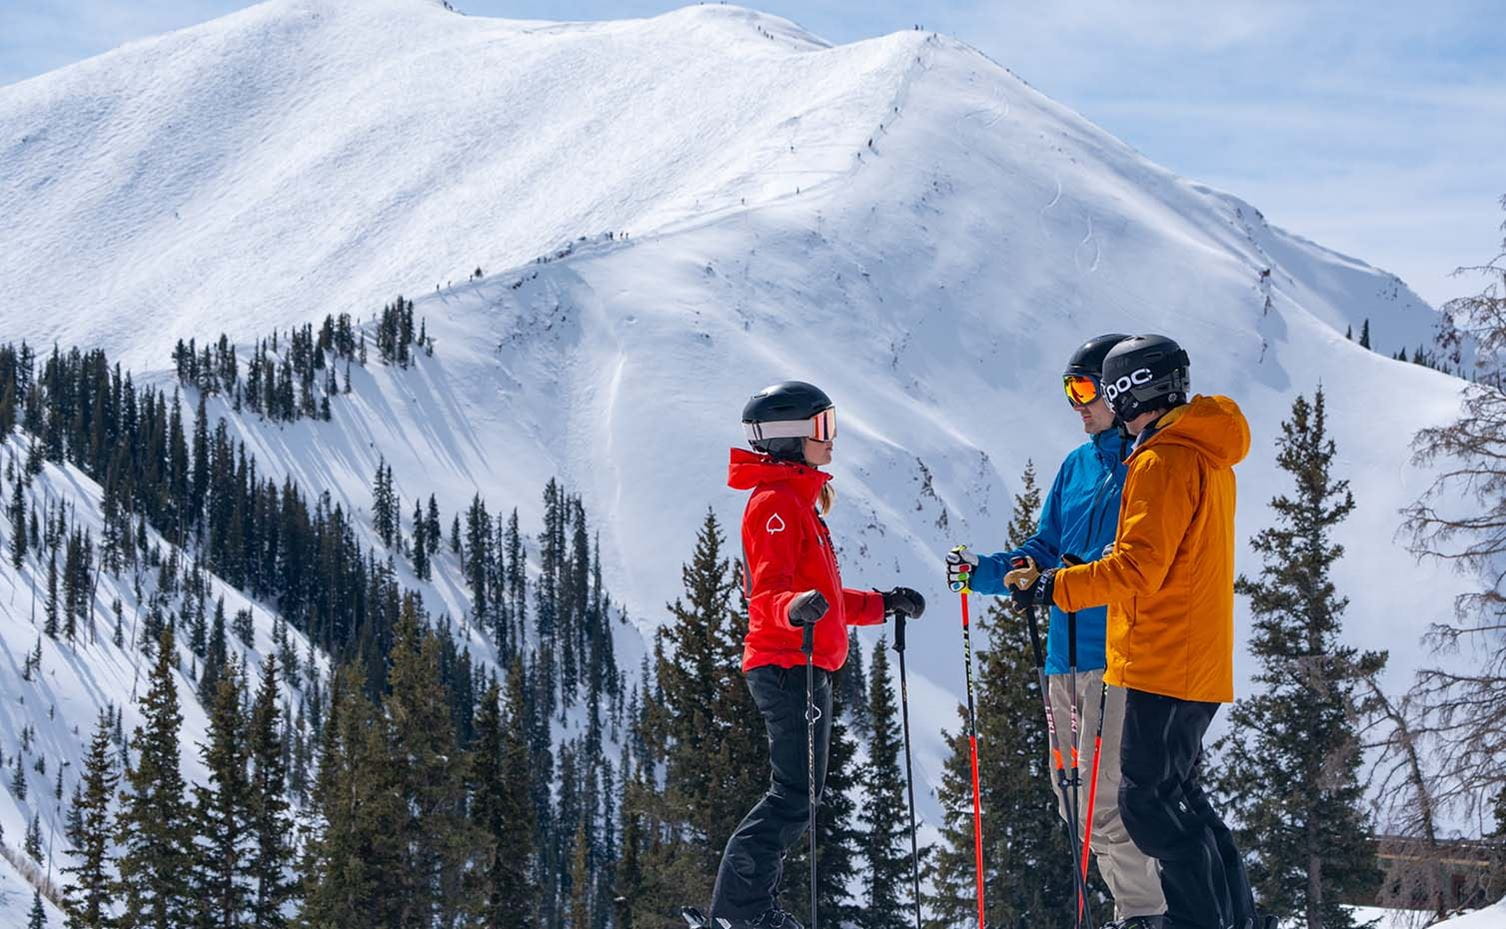 Meet the Pros at Aspen Snowmass